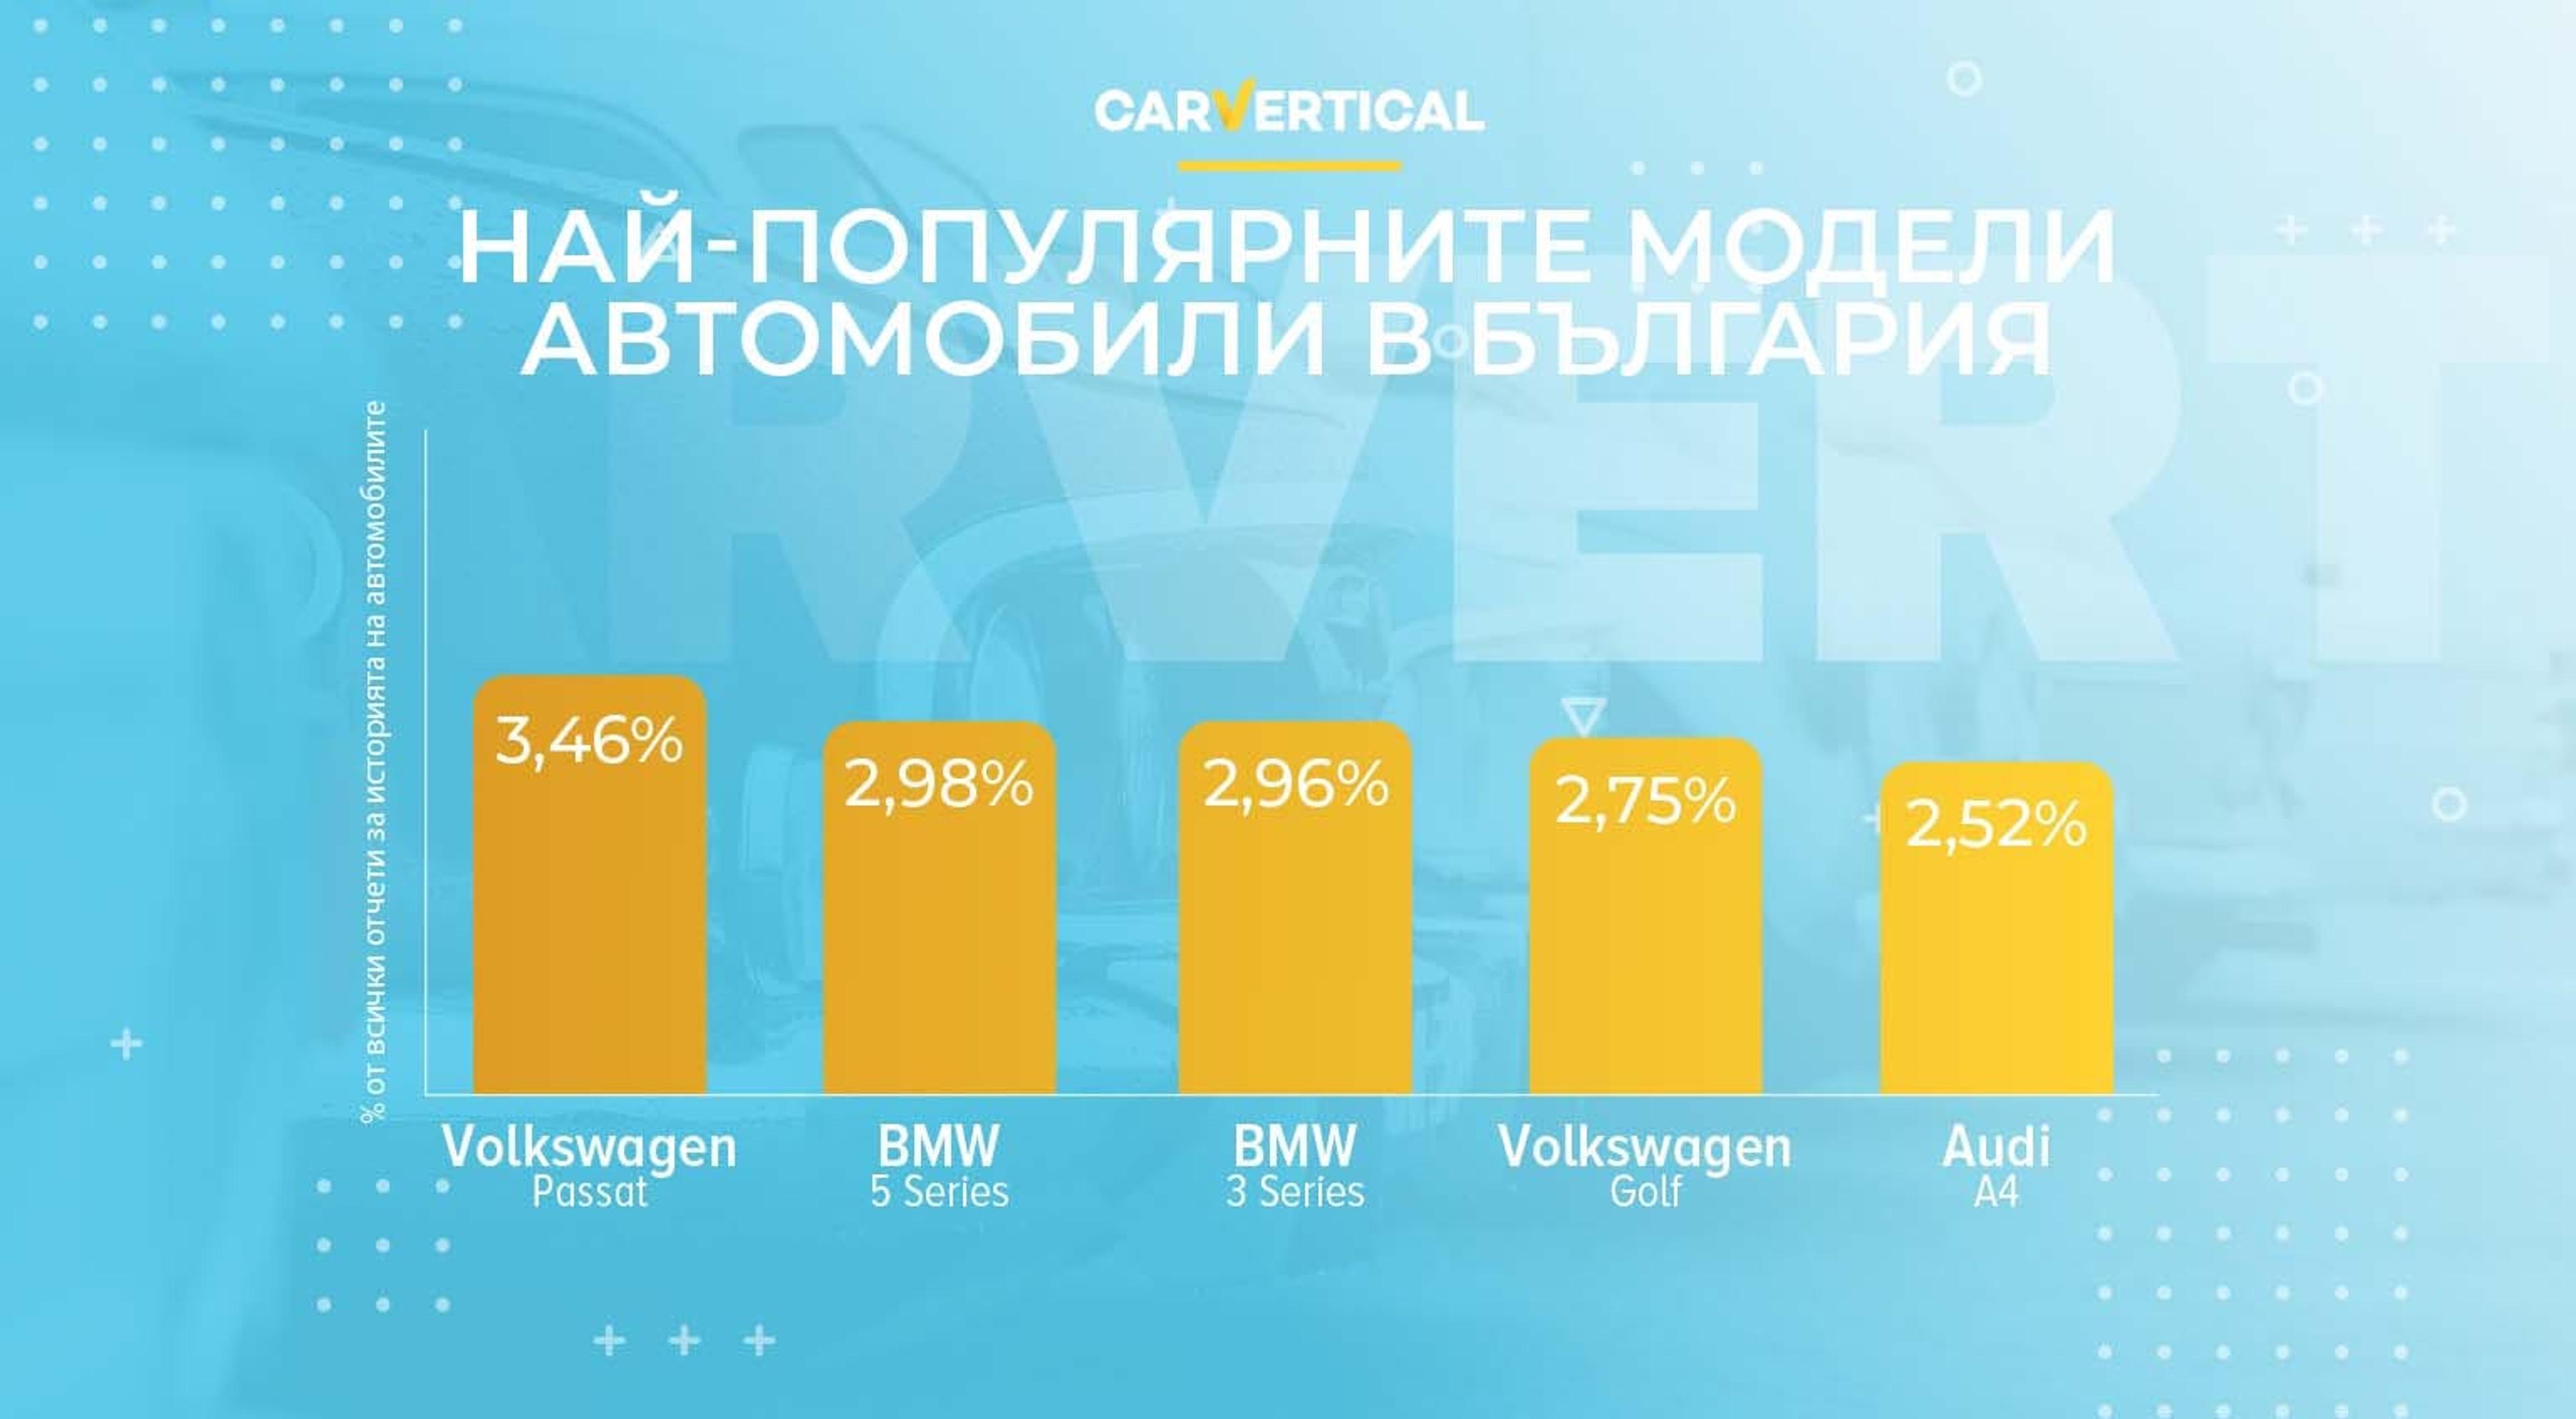 Най-популярните употребявани автомобили в България